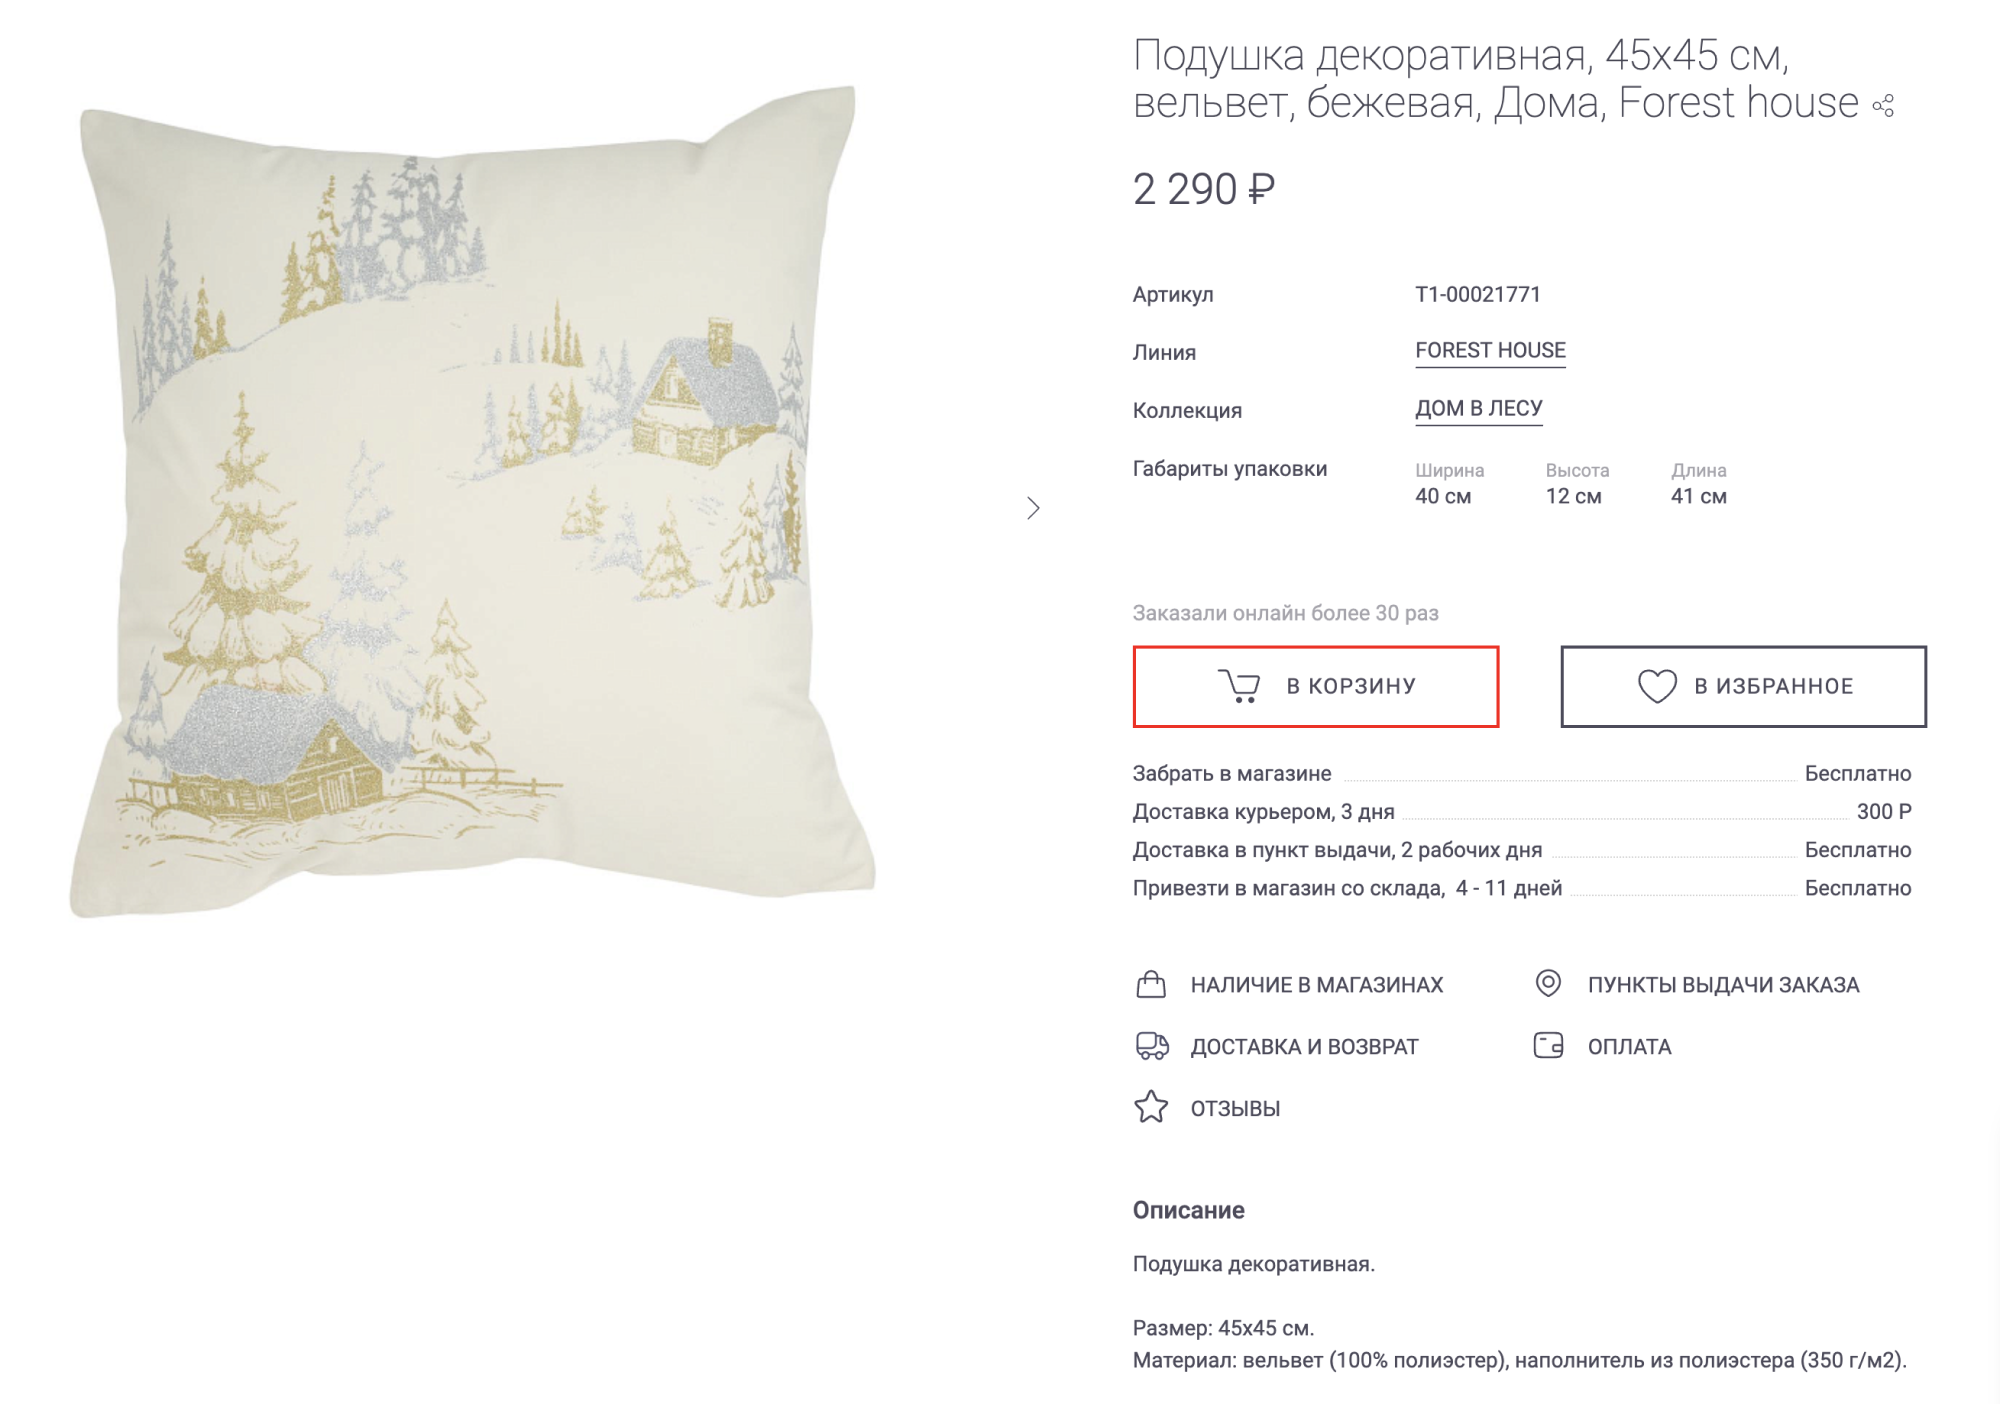 Можно купить подушку целиком примерно за 2000 ₽, а можно — только наволочки, и менять их перед новогодними праздниками. Причем наволочка обойдется значительно дешевле — до 400 ₽, да и хранить ее проще. Источник: kuchenland.ru